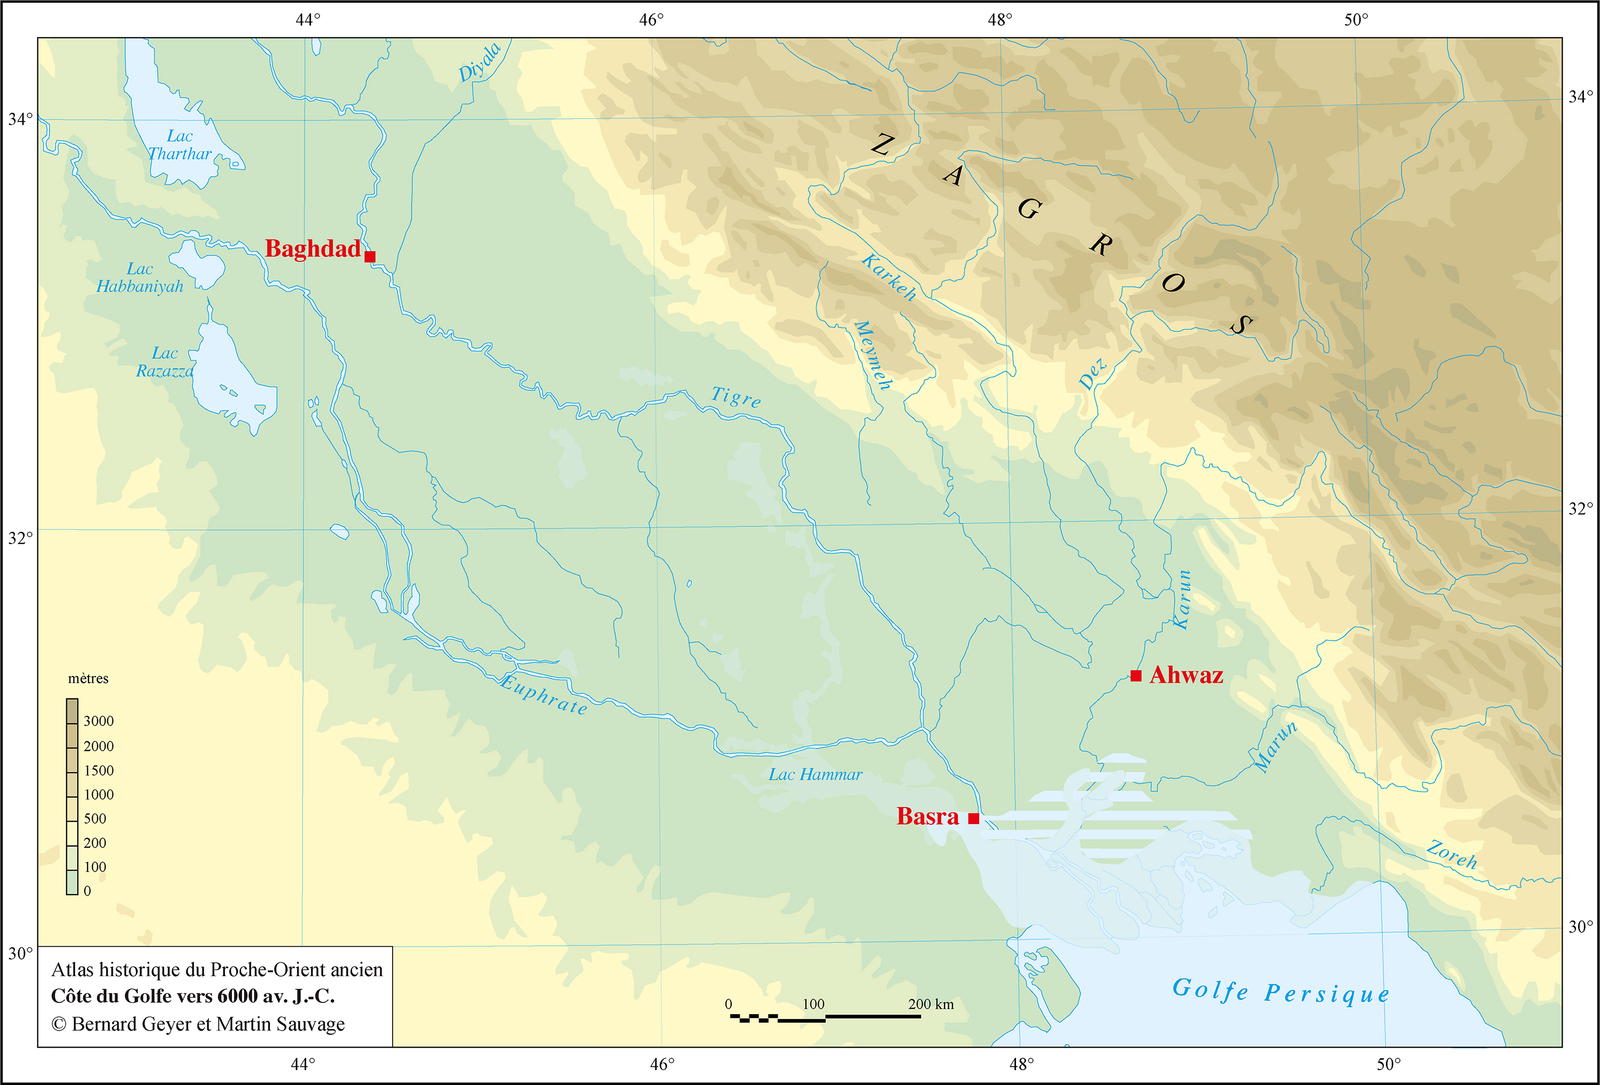 vers 6000 av. J.-C : début de l’occupation sédentaire de la région 